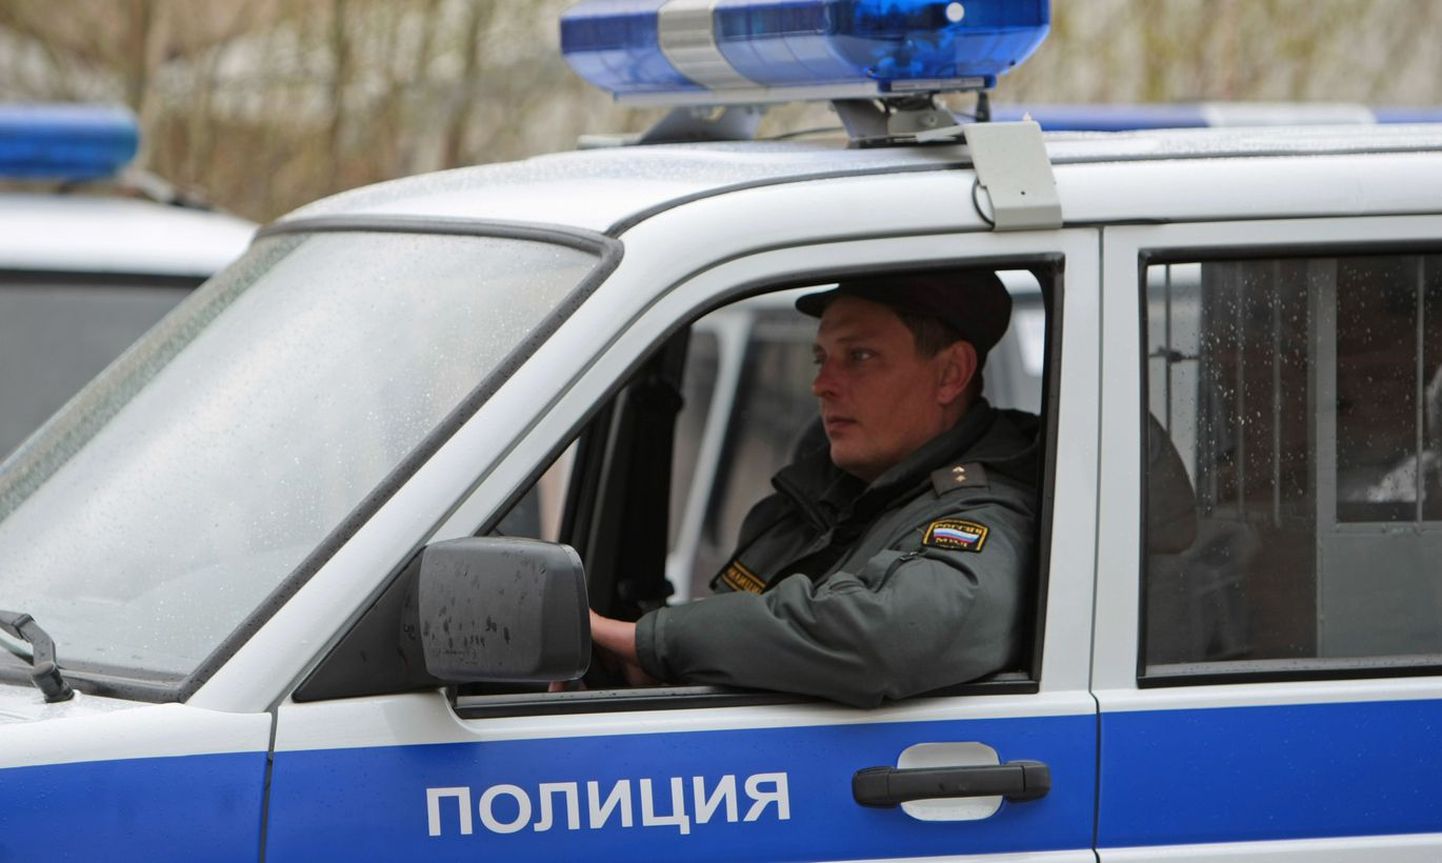 Vene politsei